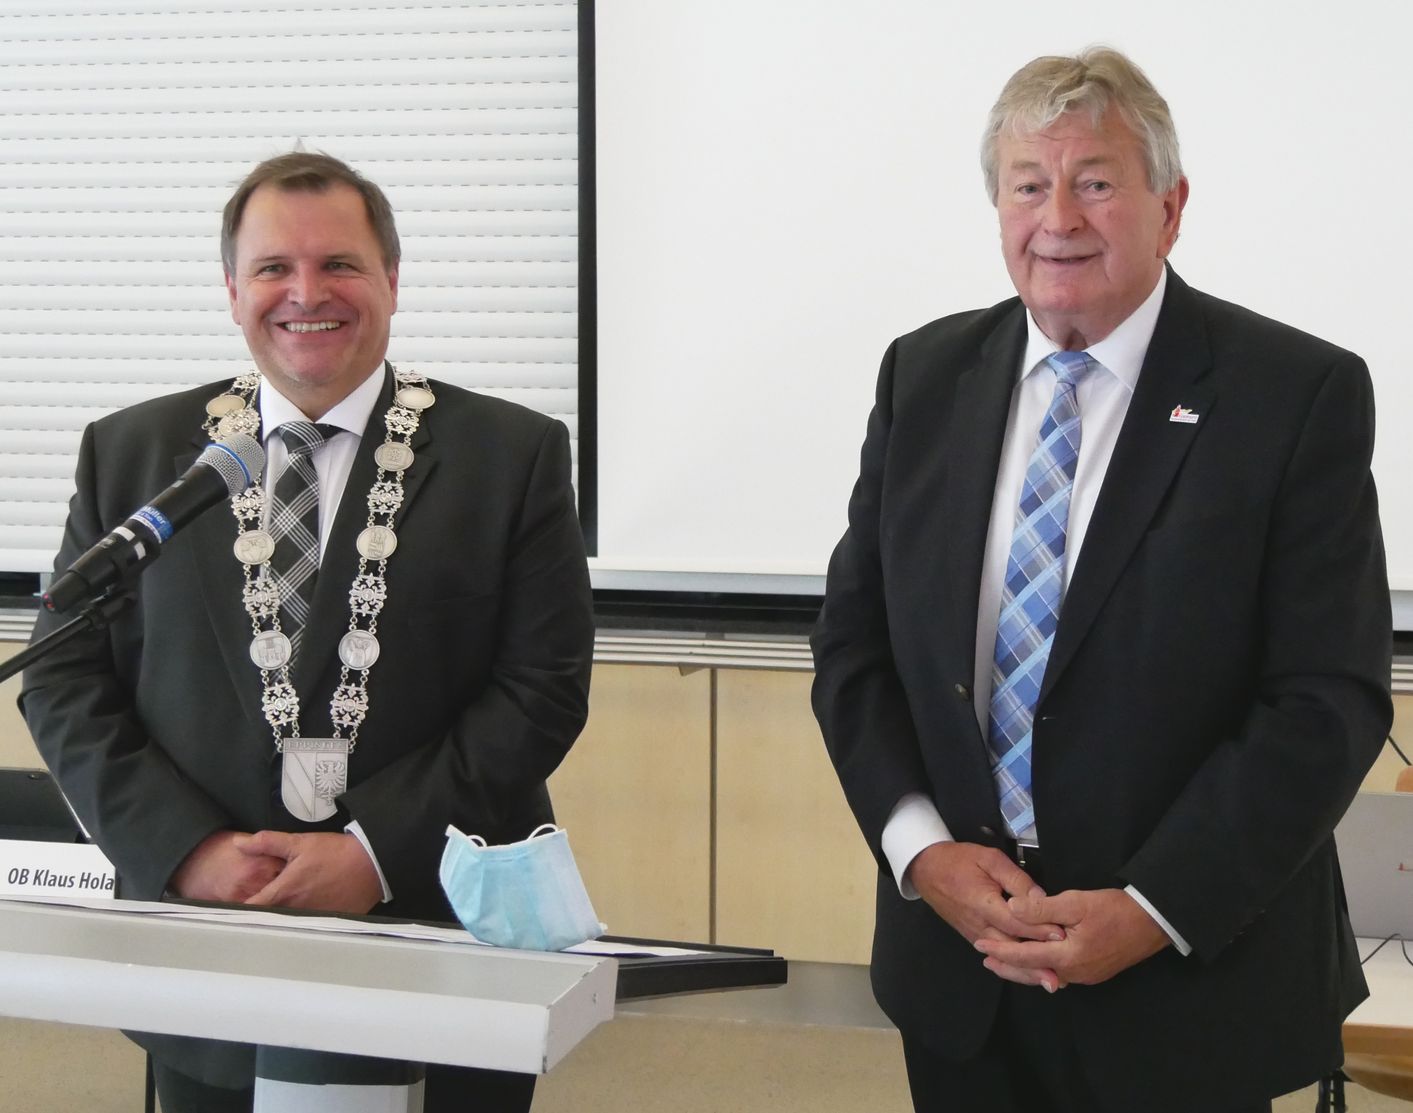 Erster Oberbürgermeister-Stellevertreter Herbert Meixner nahm die offizielle Verpflichtung in der öffentlichen Sitzung des Gemeinderats am 28. April 2020 vor